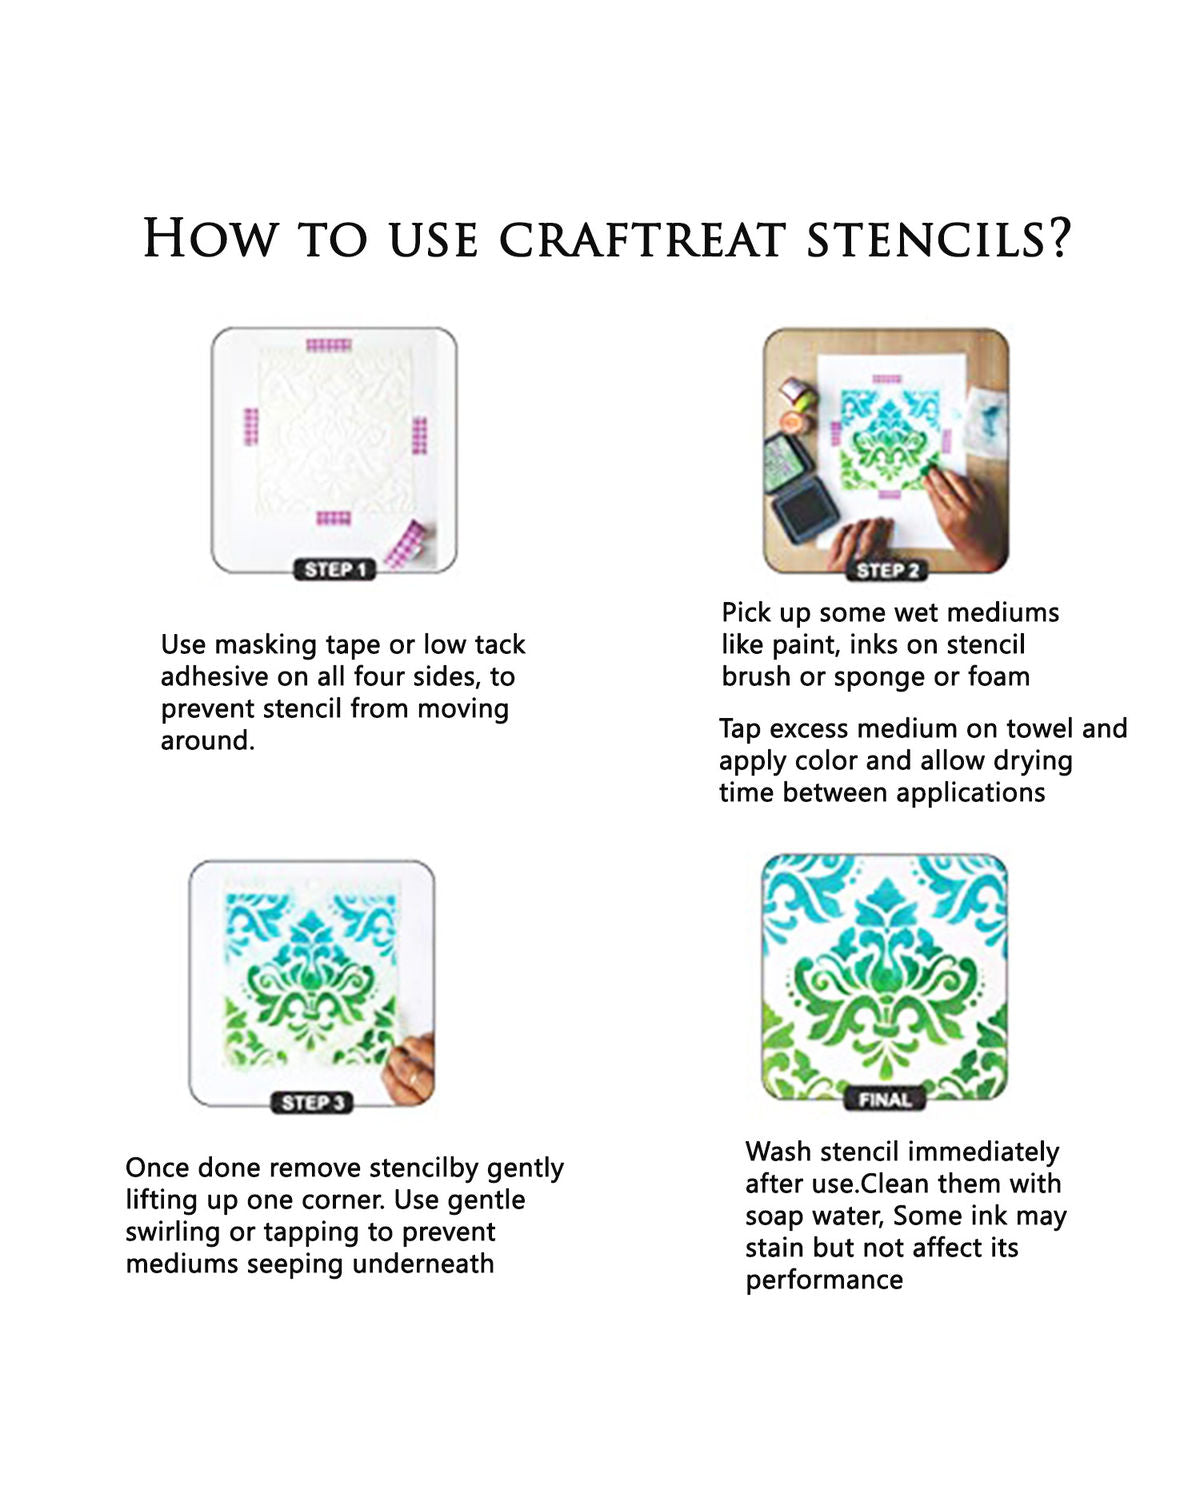 Craft Smart Flower Stencils - Each